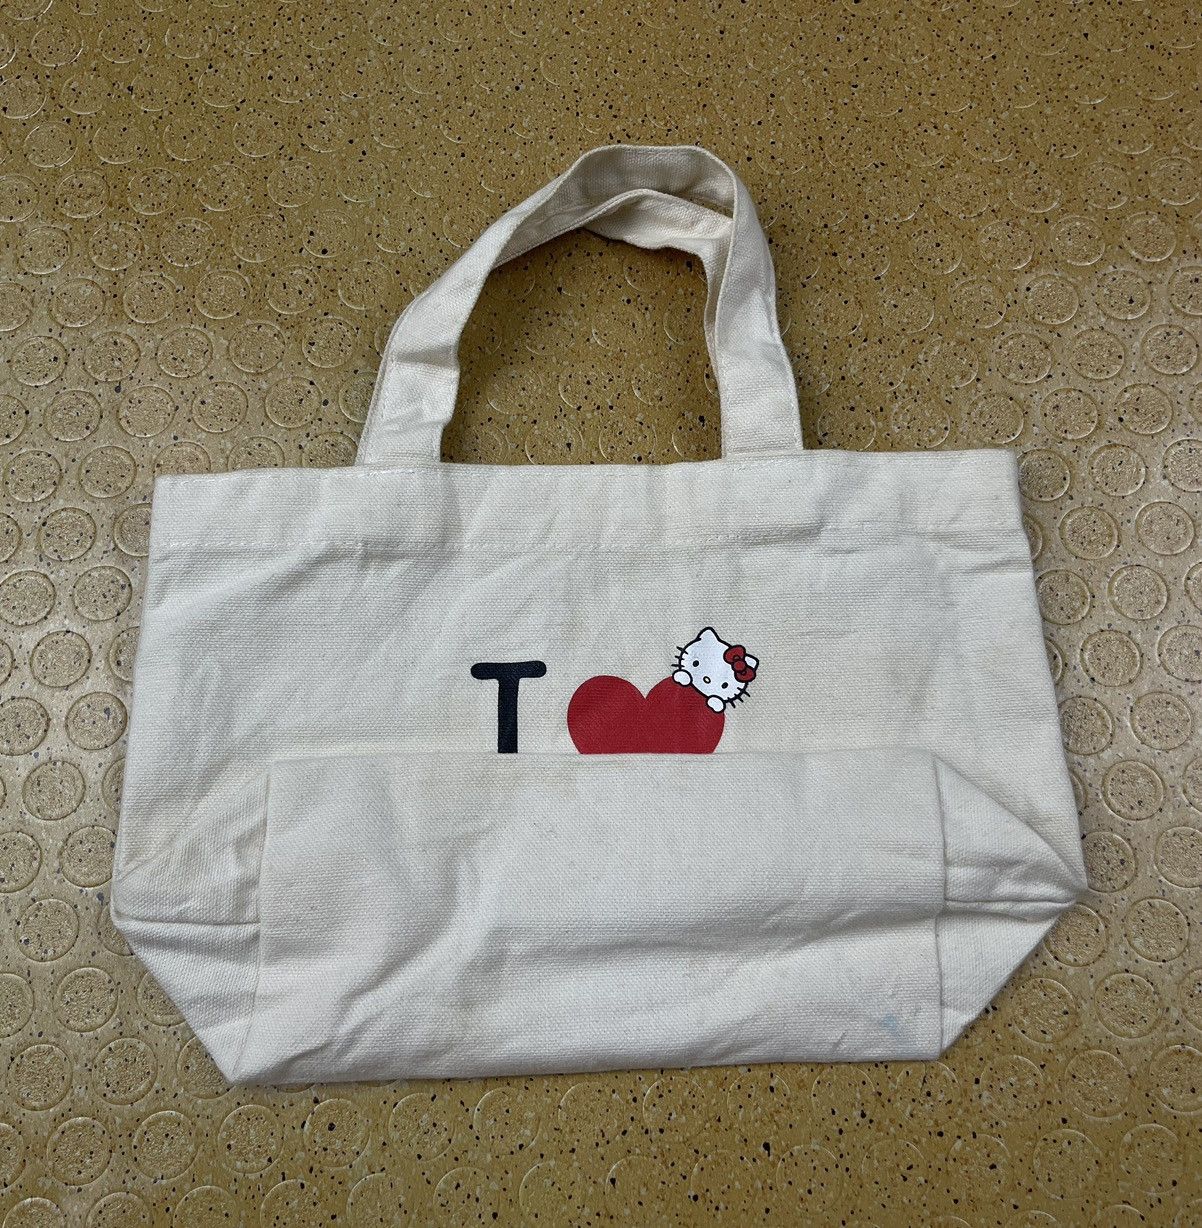 Japanese Brand - hello kitty tote bag handle bag - 6